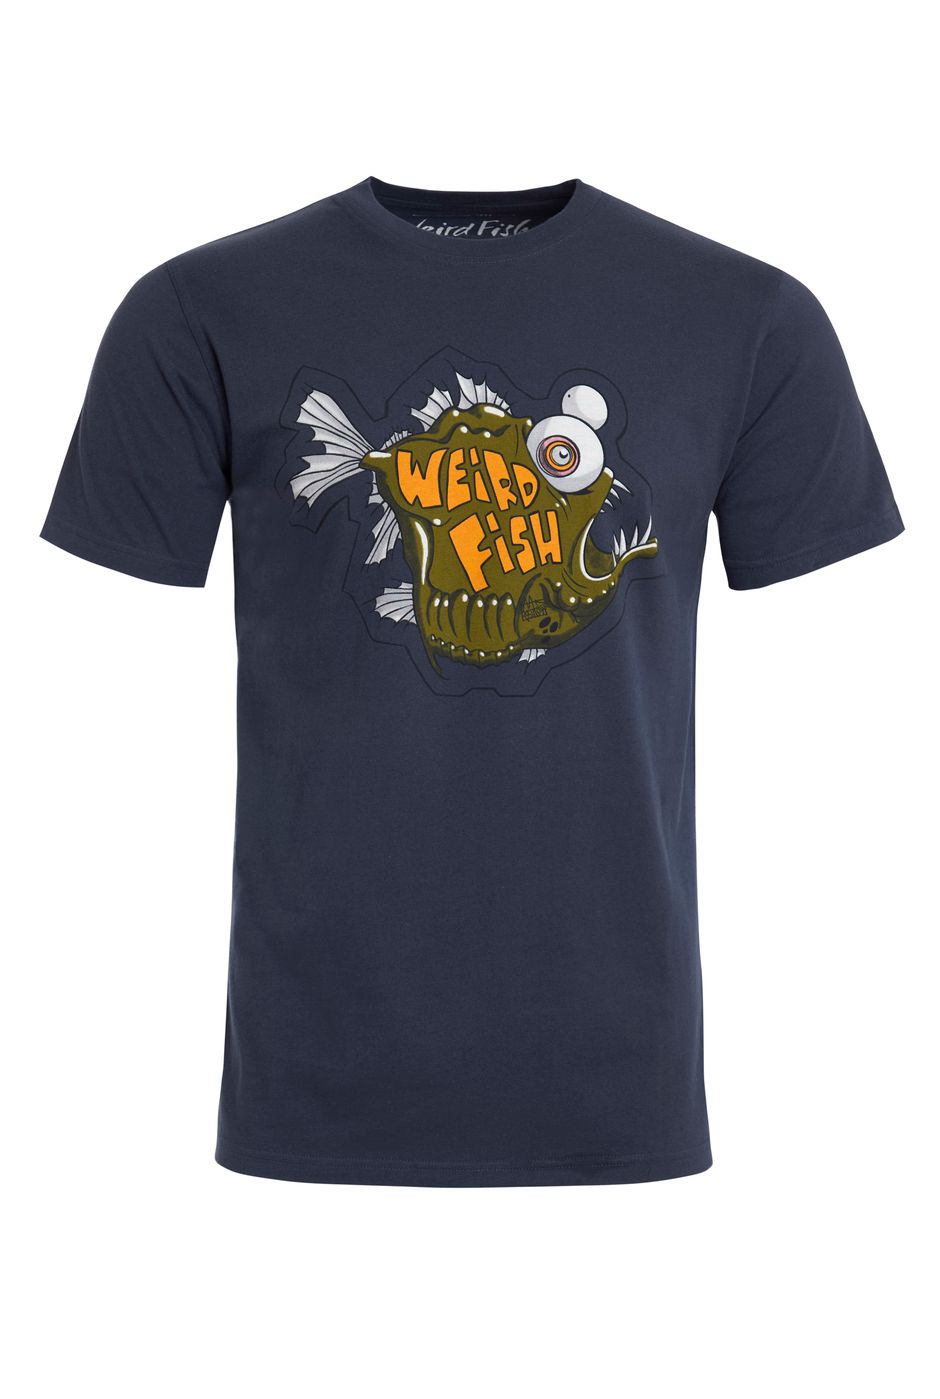 Deep Sea Organic Cotton Artist T-Shirt Navy